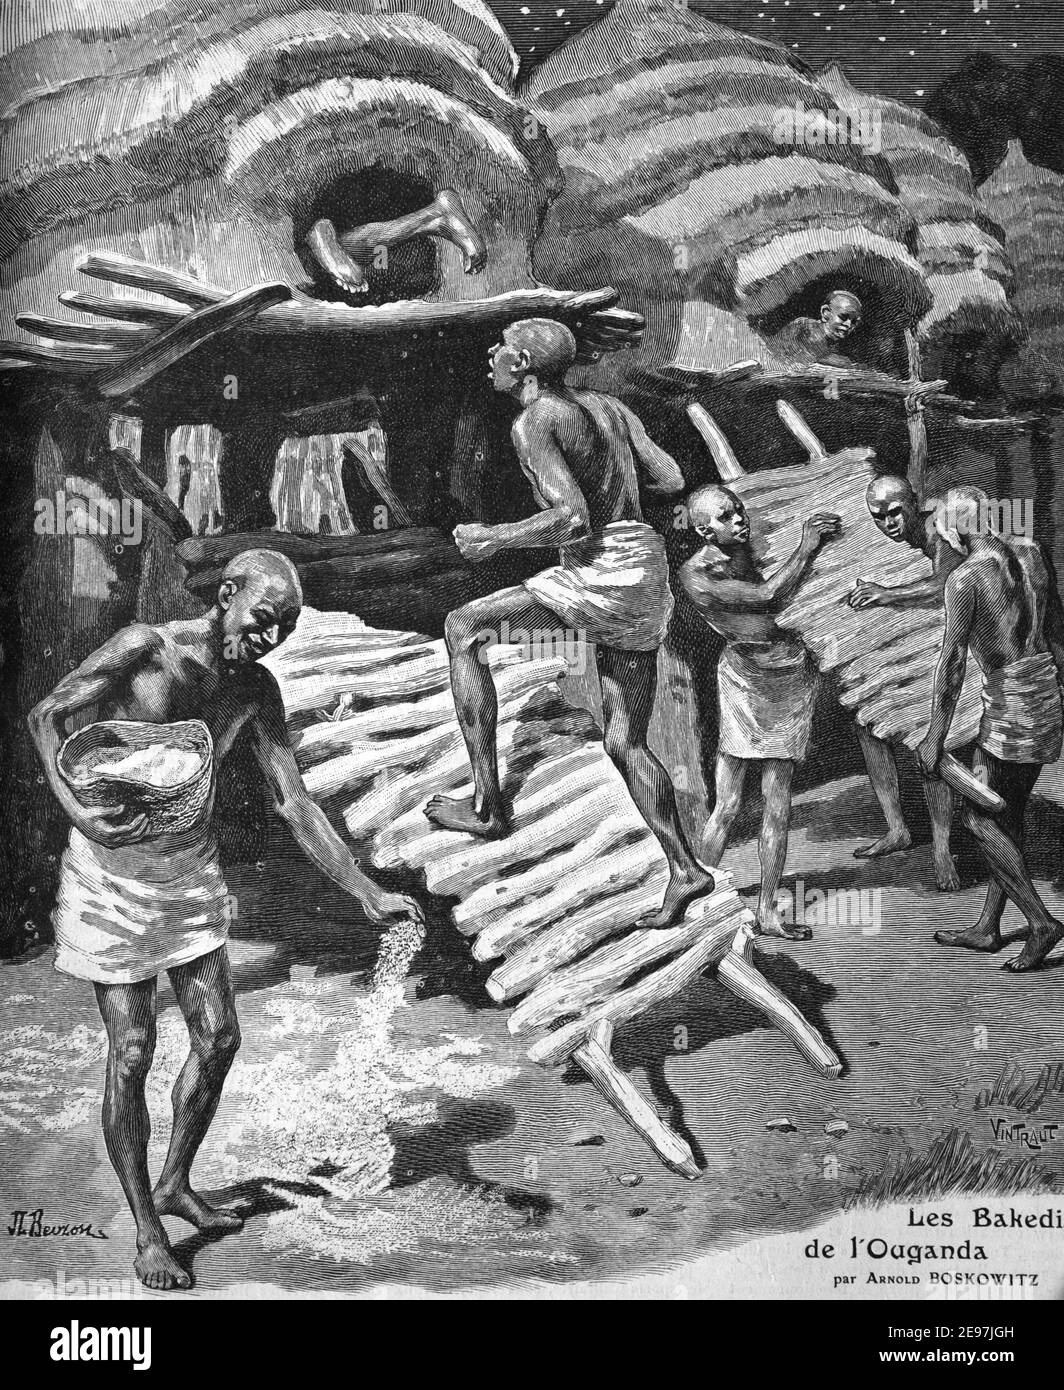 Teso Men, noto come Etesot, costruendo rifugi Batchelor del popolo Teso Uganda o Kenya occidentale 1911 Vintage Illustrazione o incisione Foto Stock